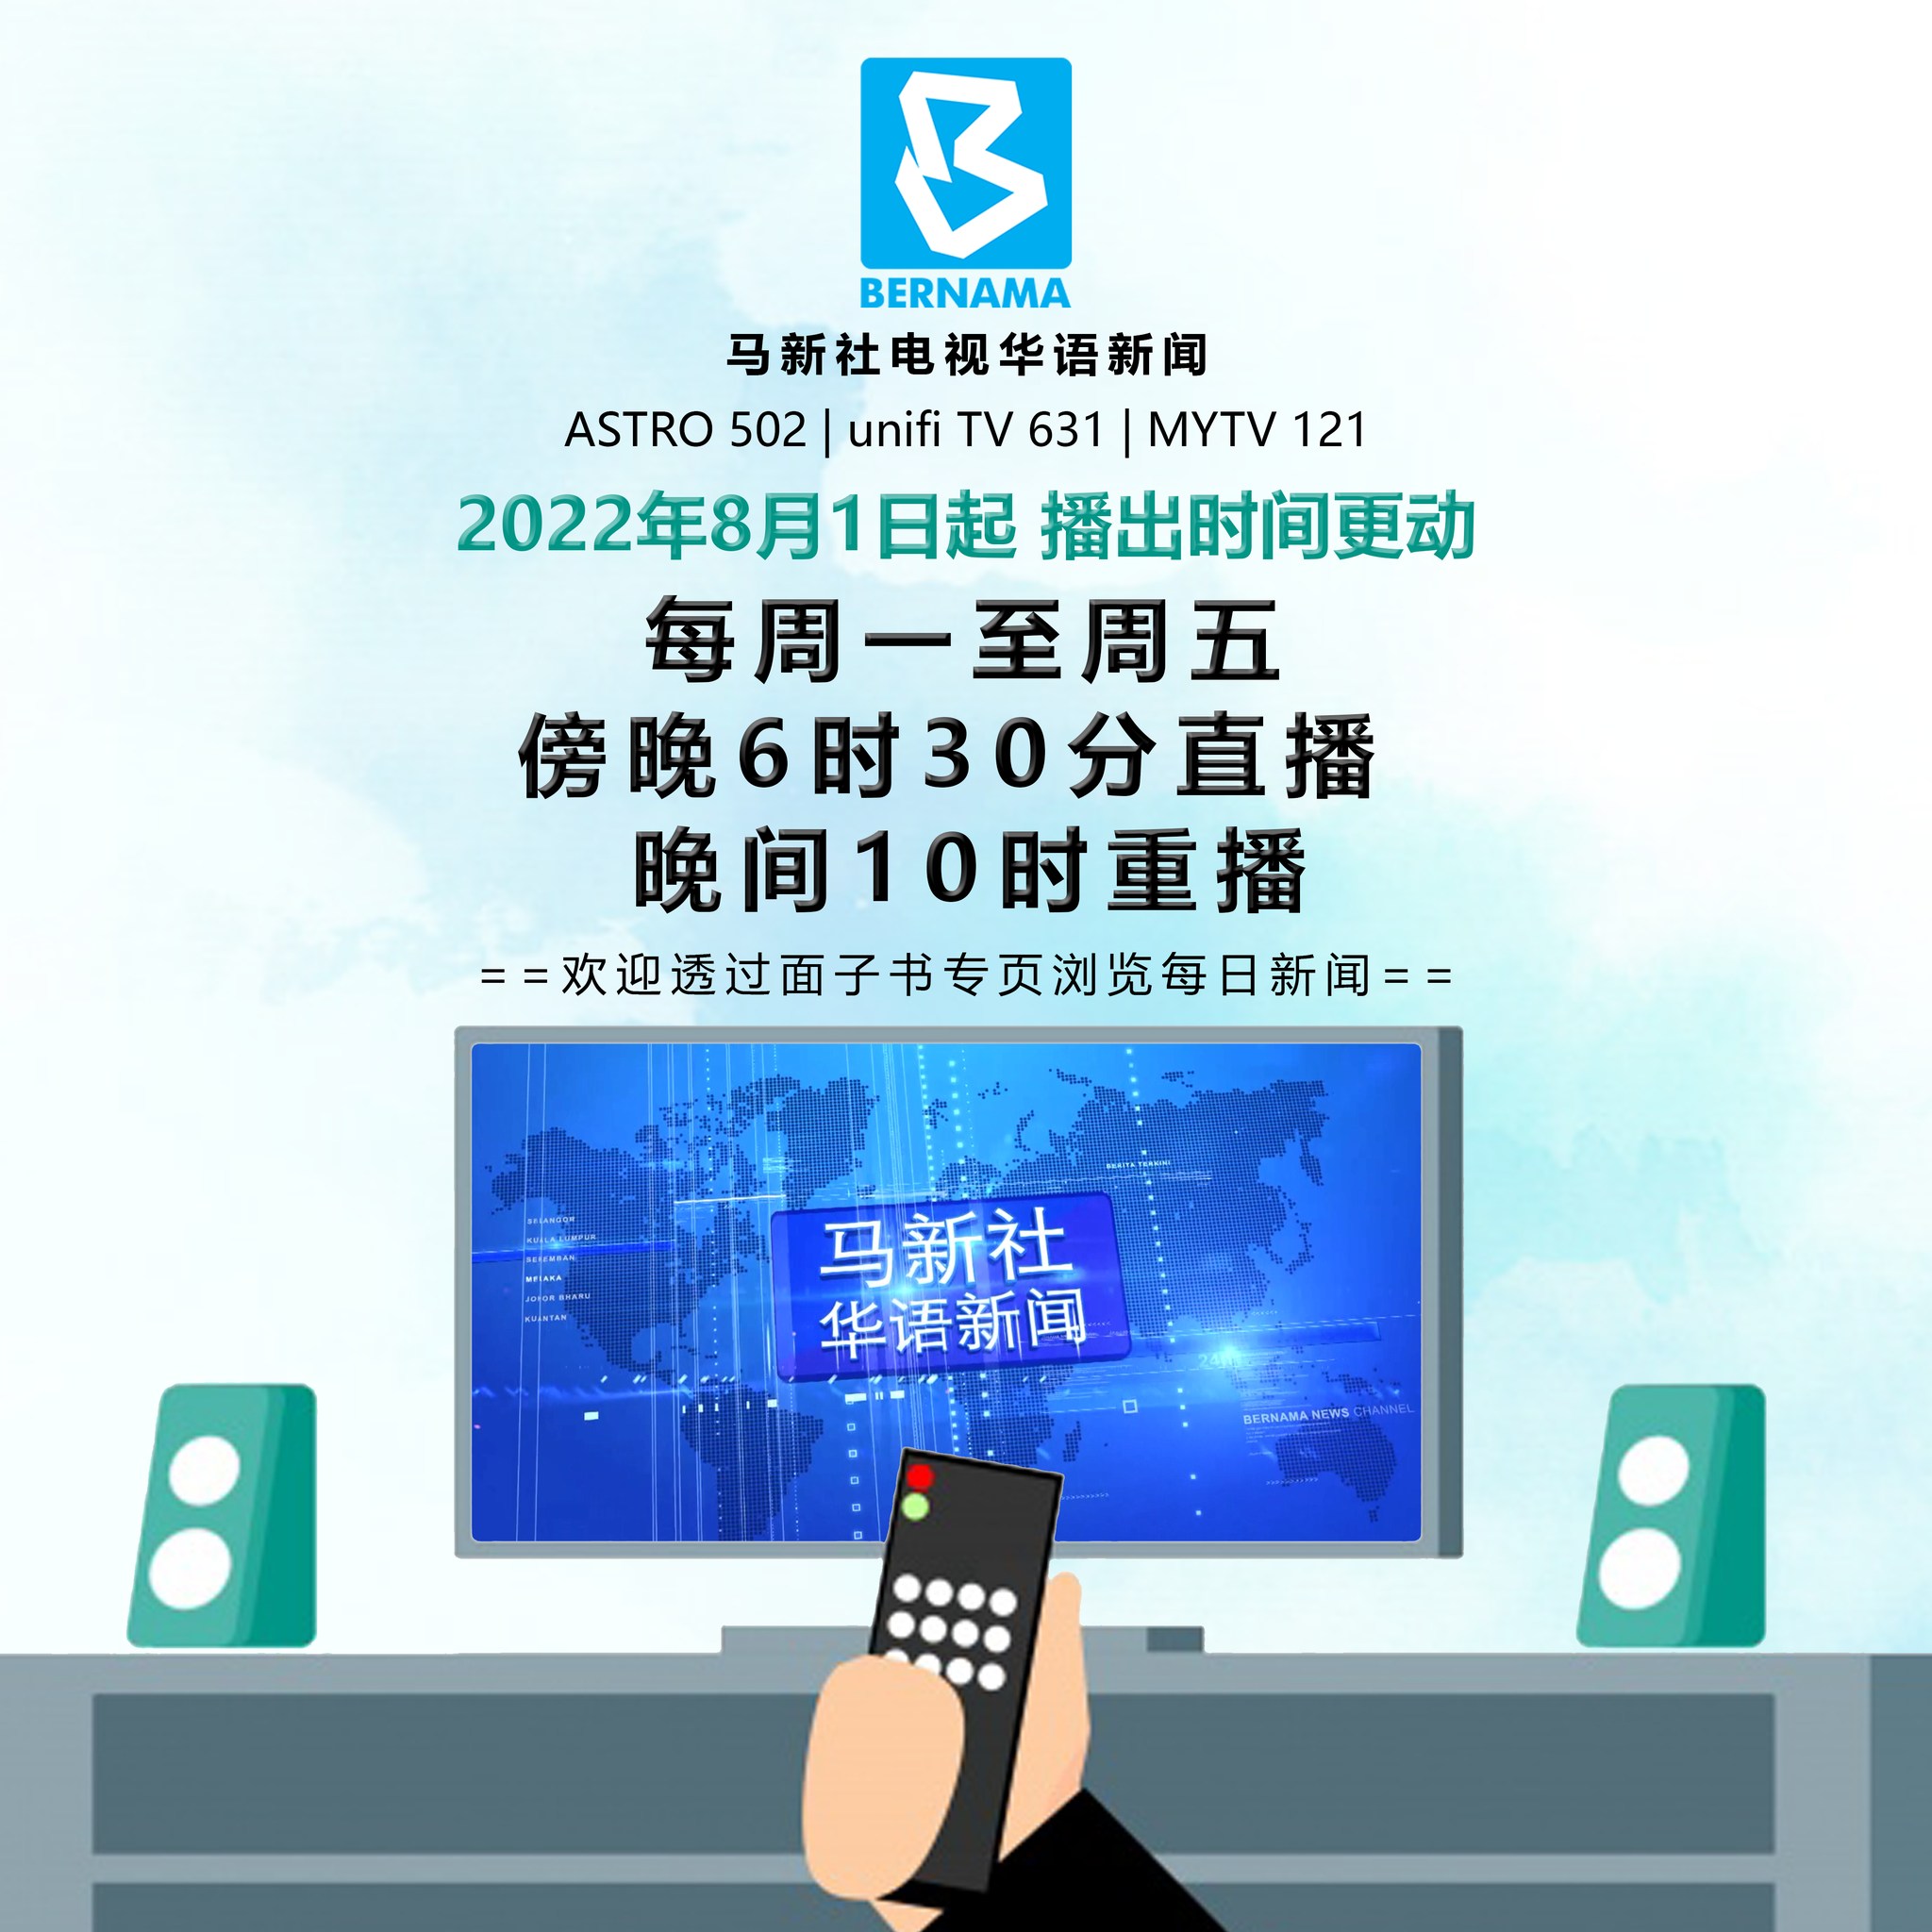 马新社华语新闻7减1 一周播出5天